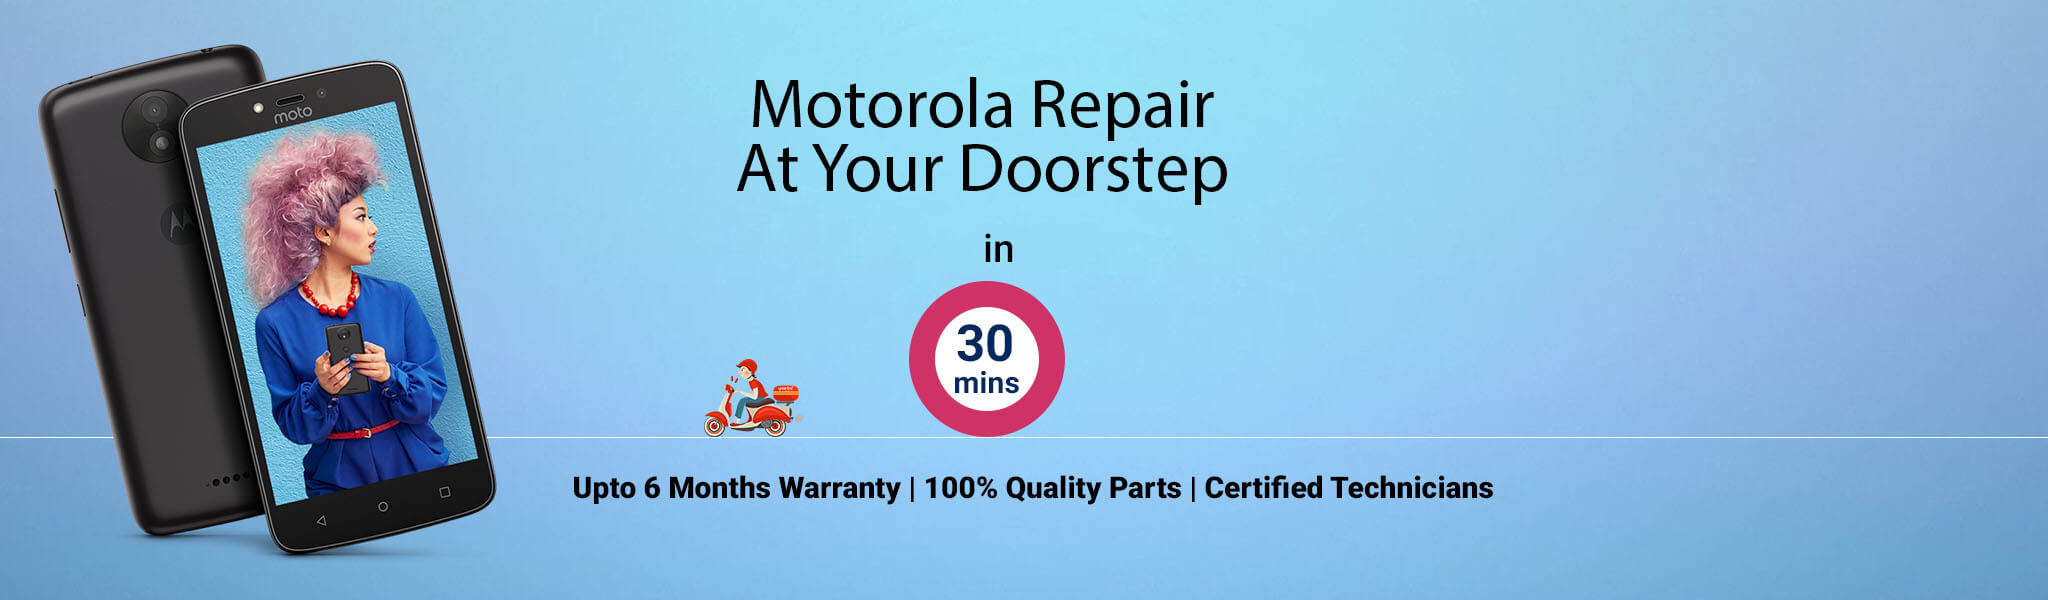 motorola-repair-service-banner-delhi.jpg